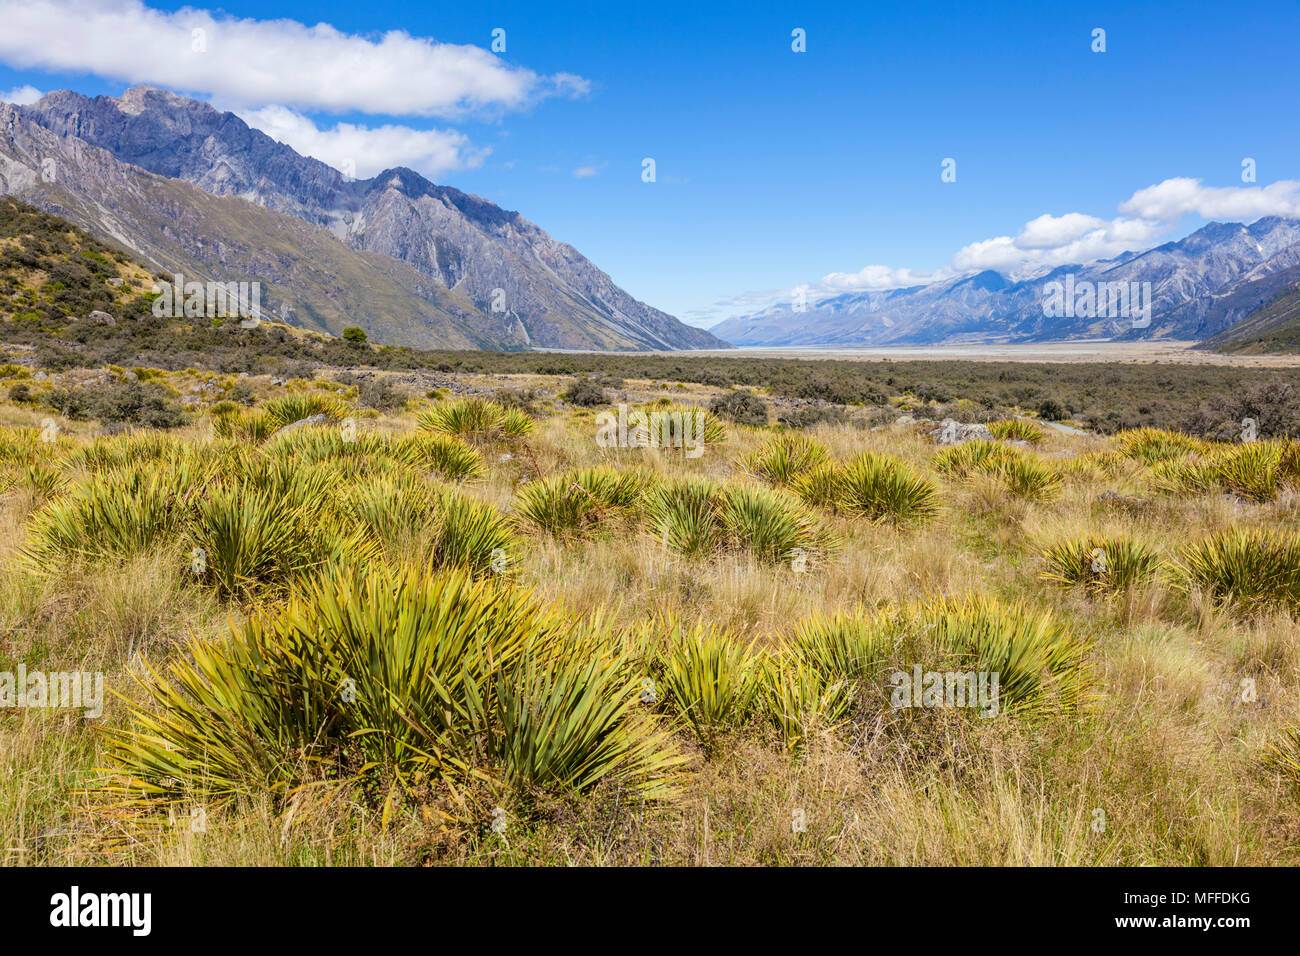 Parc national du mont Cook vue depuis le chemin d'glacier tasman nouvelle zélande ile sud Nouvelle zelande zealandnew ile sud Nouvelle zelande Banque D'Images